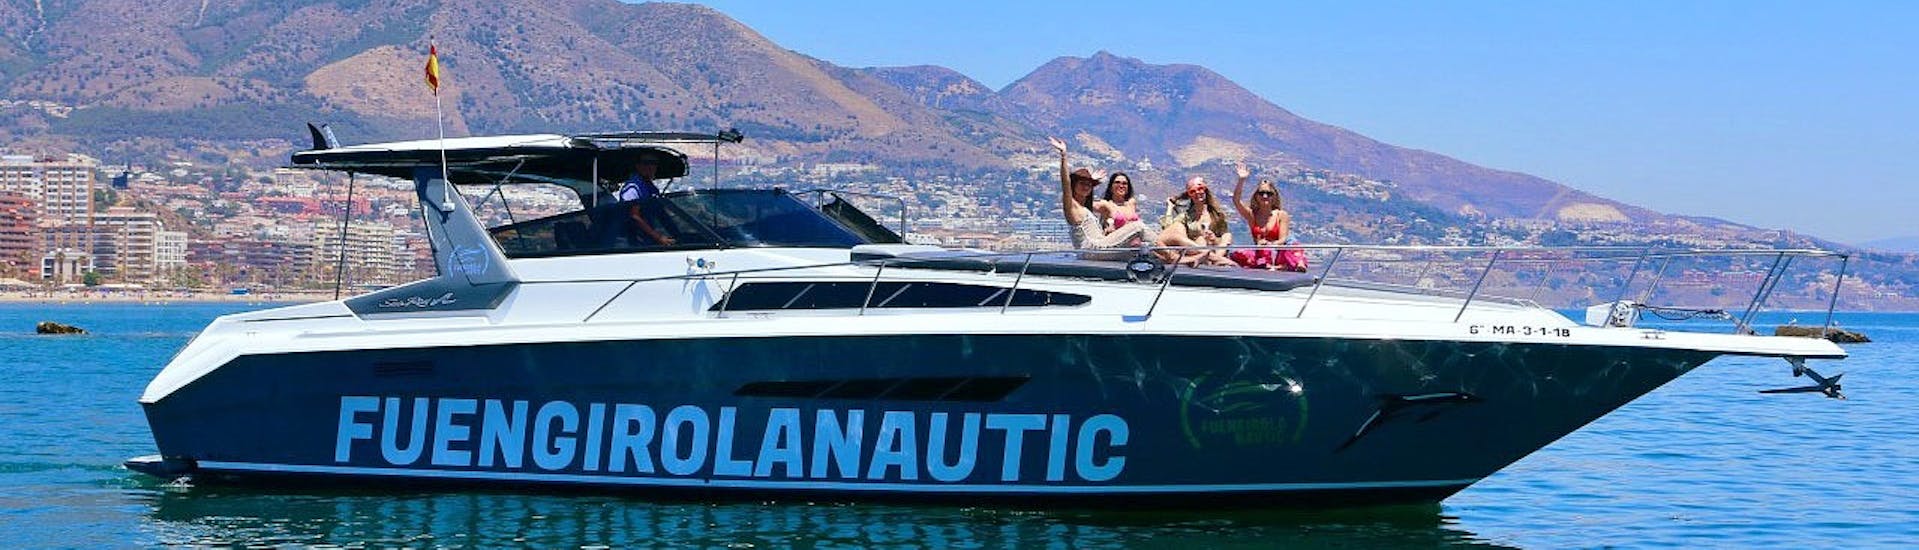 Photo du bateau pendant la location de yacht à Fuengirola (jusqu'à 12 personnes) avec Fuengirolanautic.